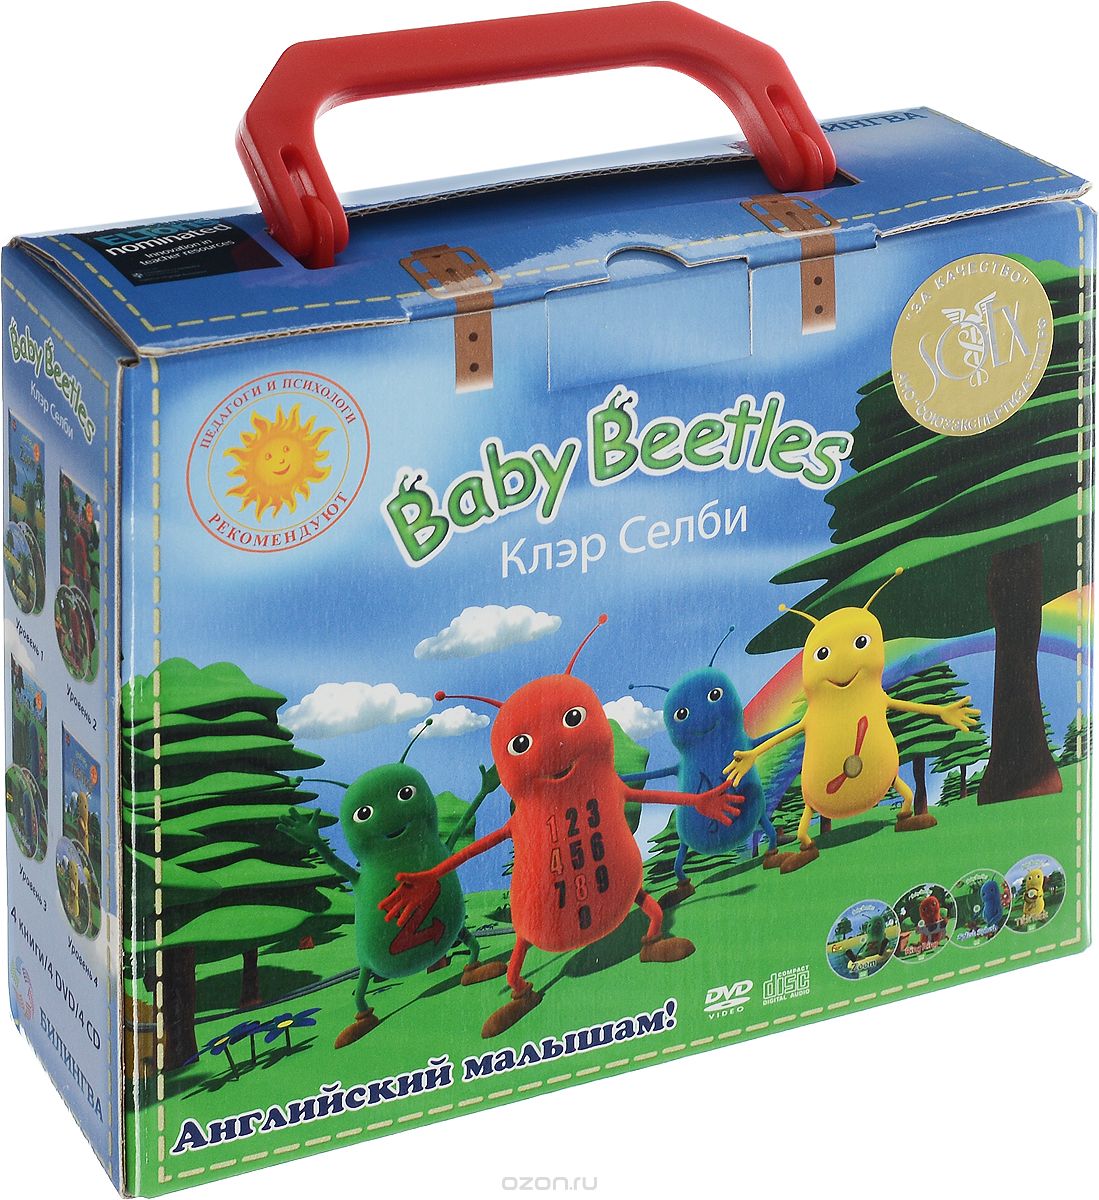 Baby Beetles (комплект из 4 книг + 4 DVD-ROM и 4 CD), Клэр Селби